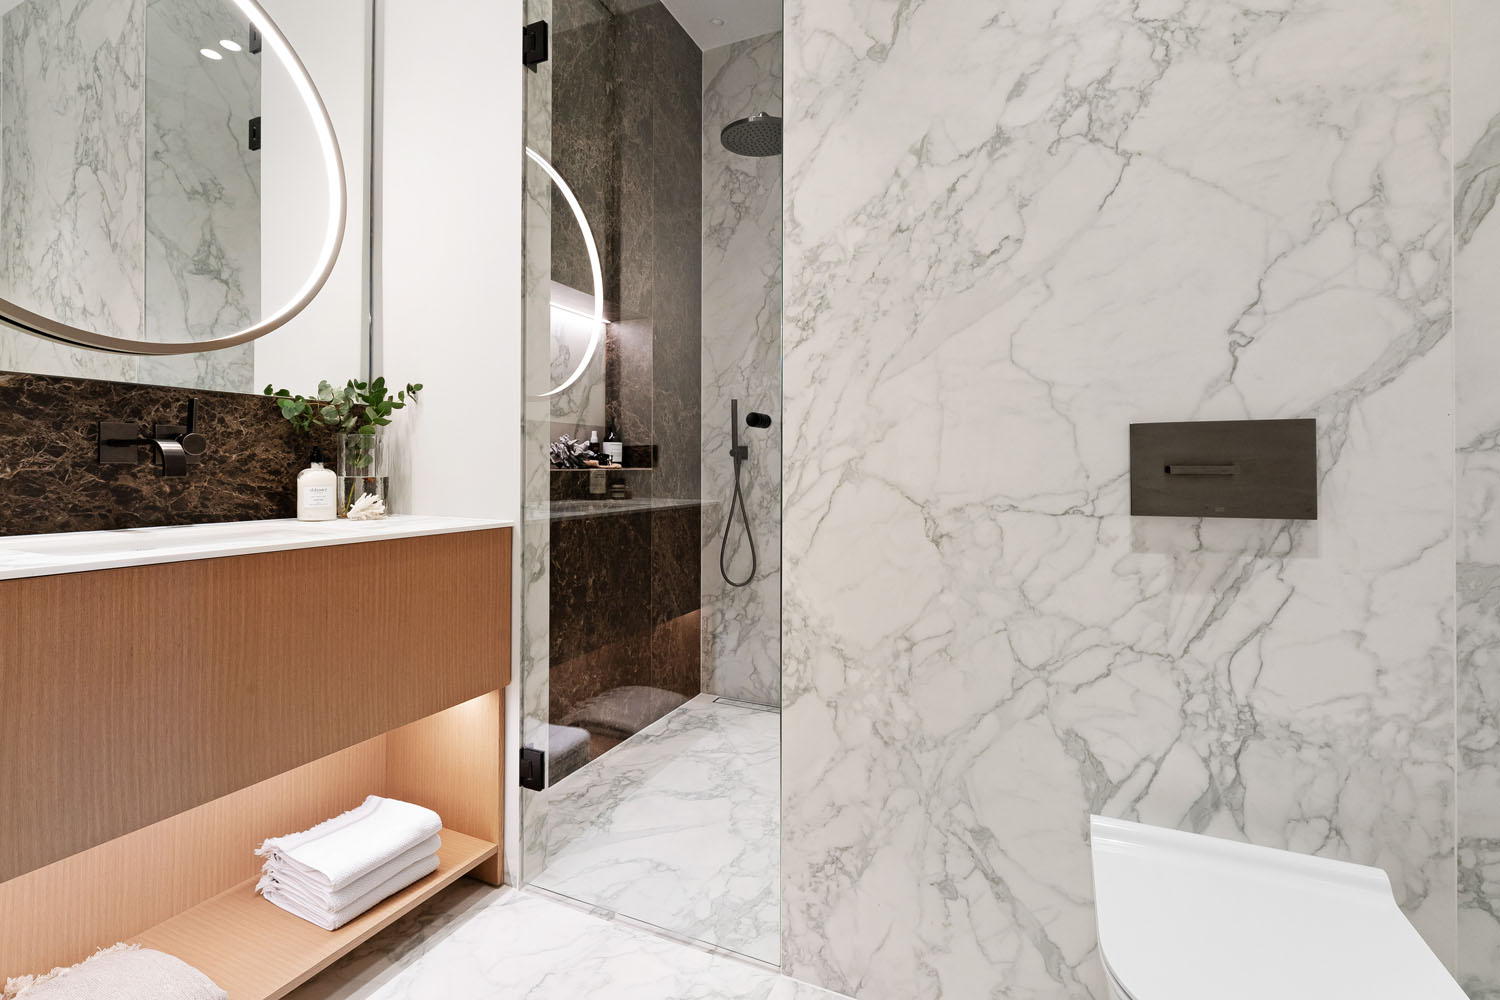 Badet er preget av naturlige elementer som treverk og marmor.